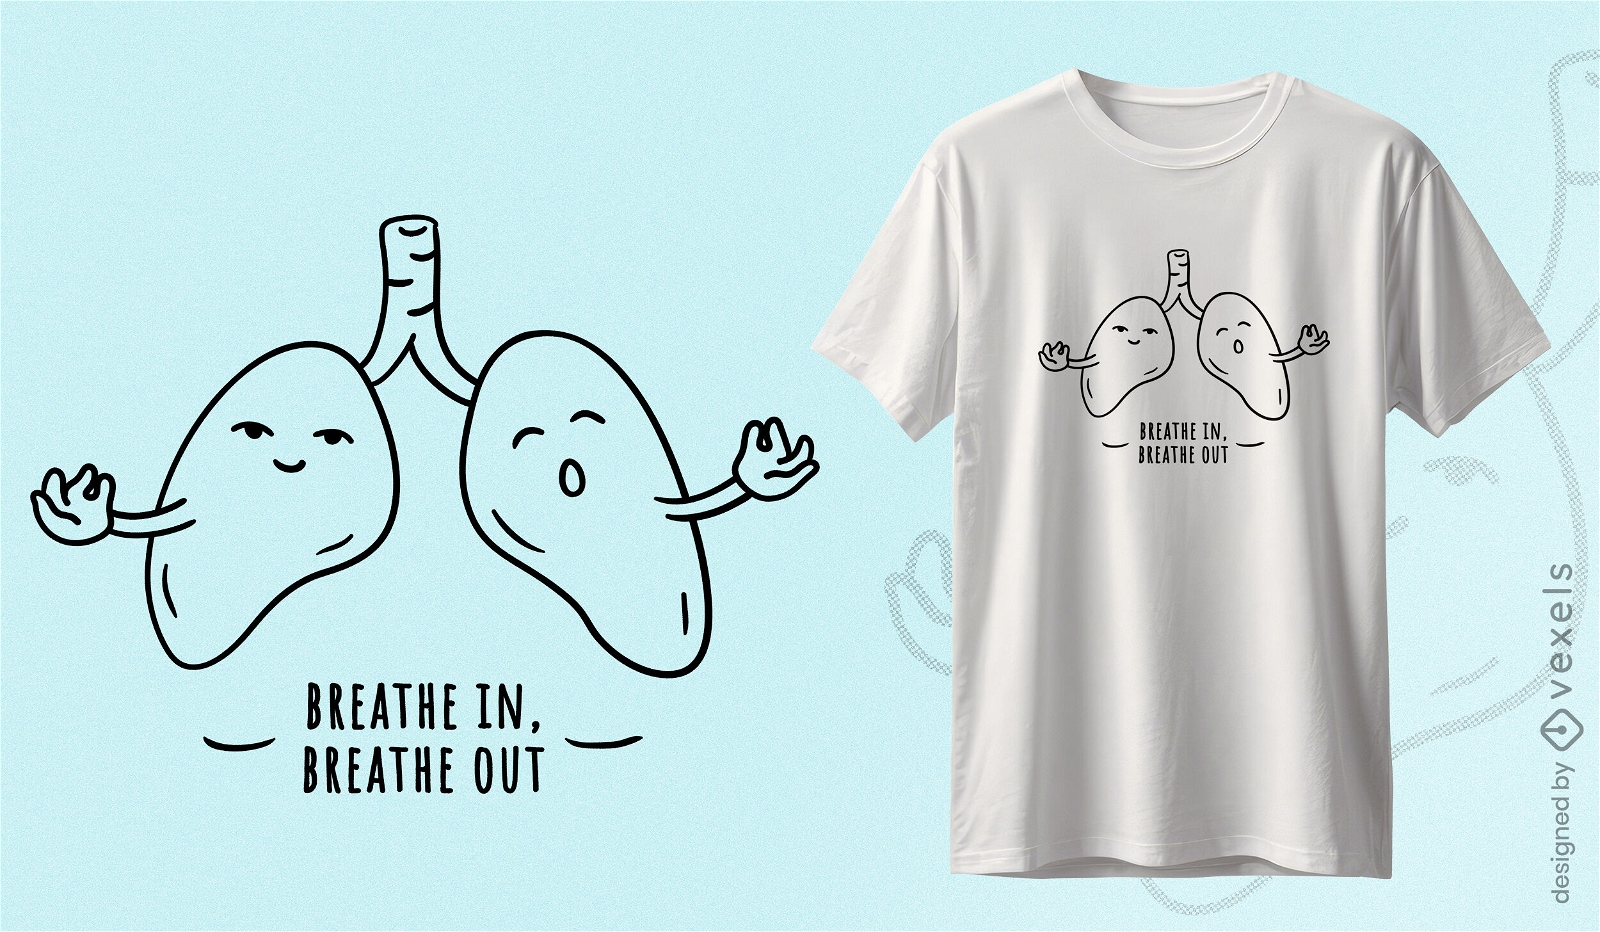 Dise?o de camiseta de respiraci?n consciente.